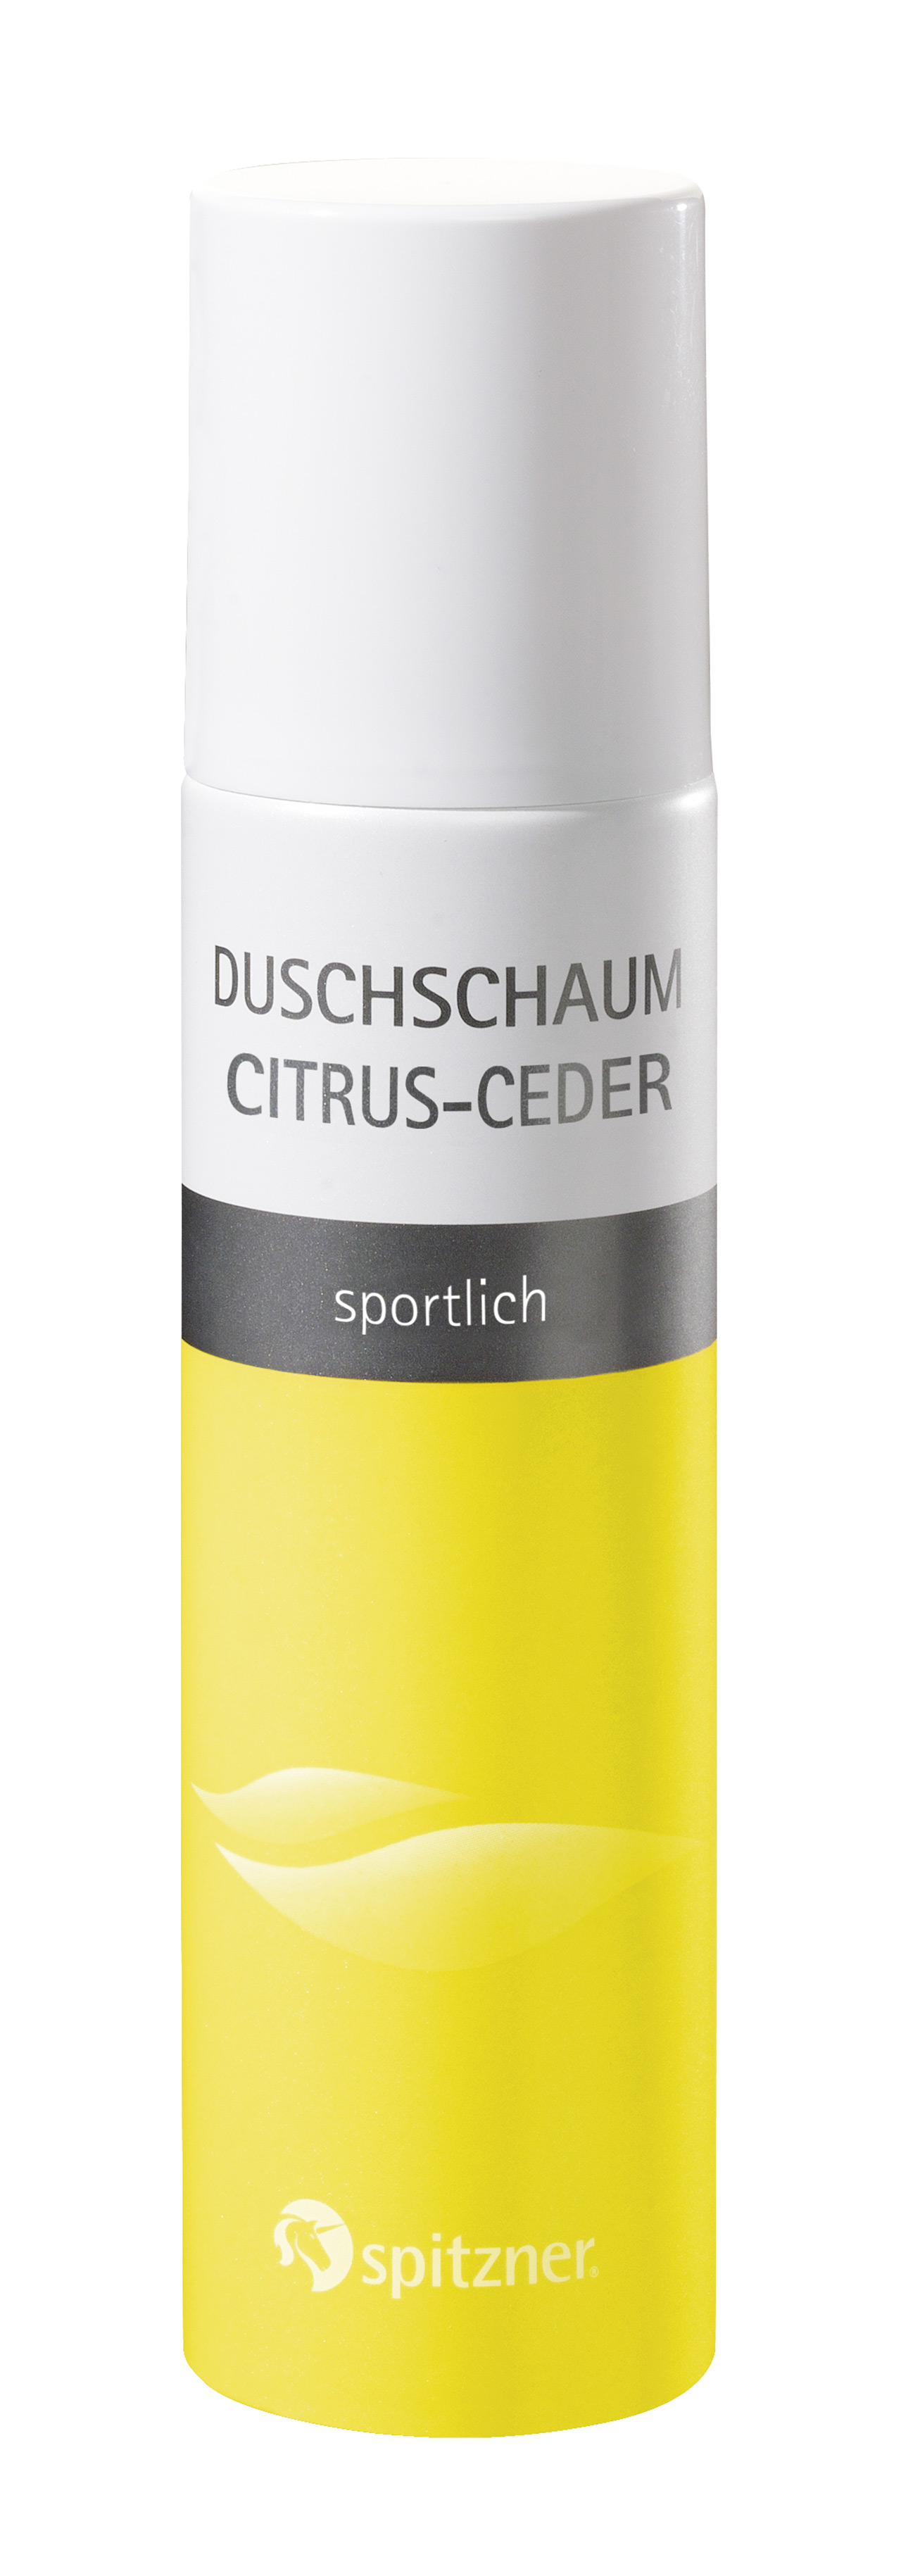 Spitzner® Duschschaum Citrus-Ceder, 150 ml